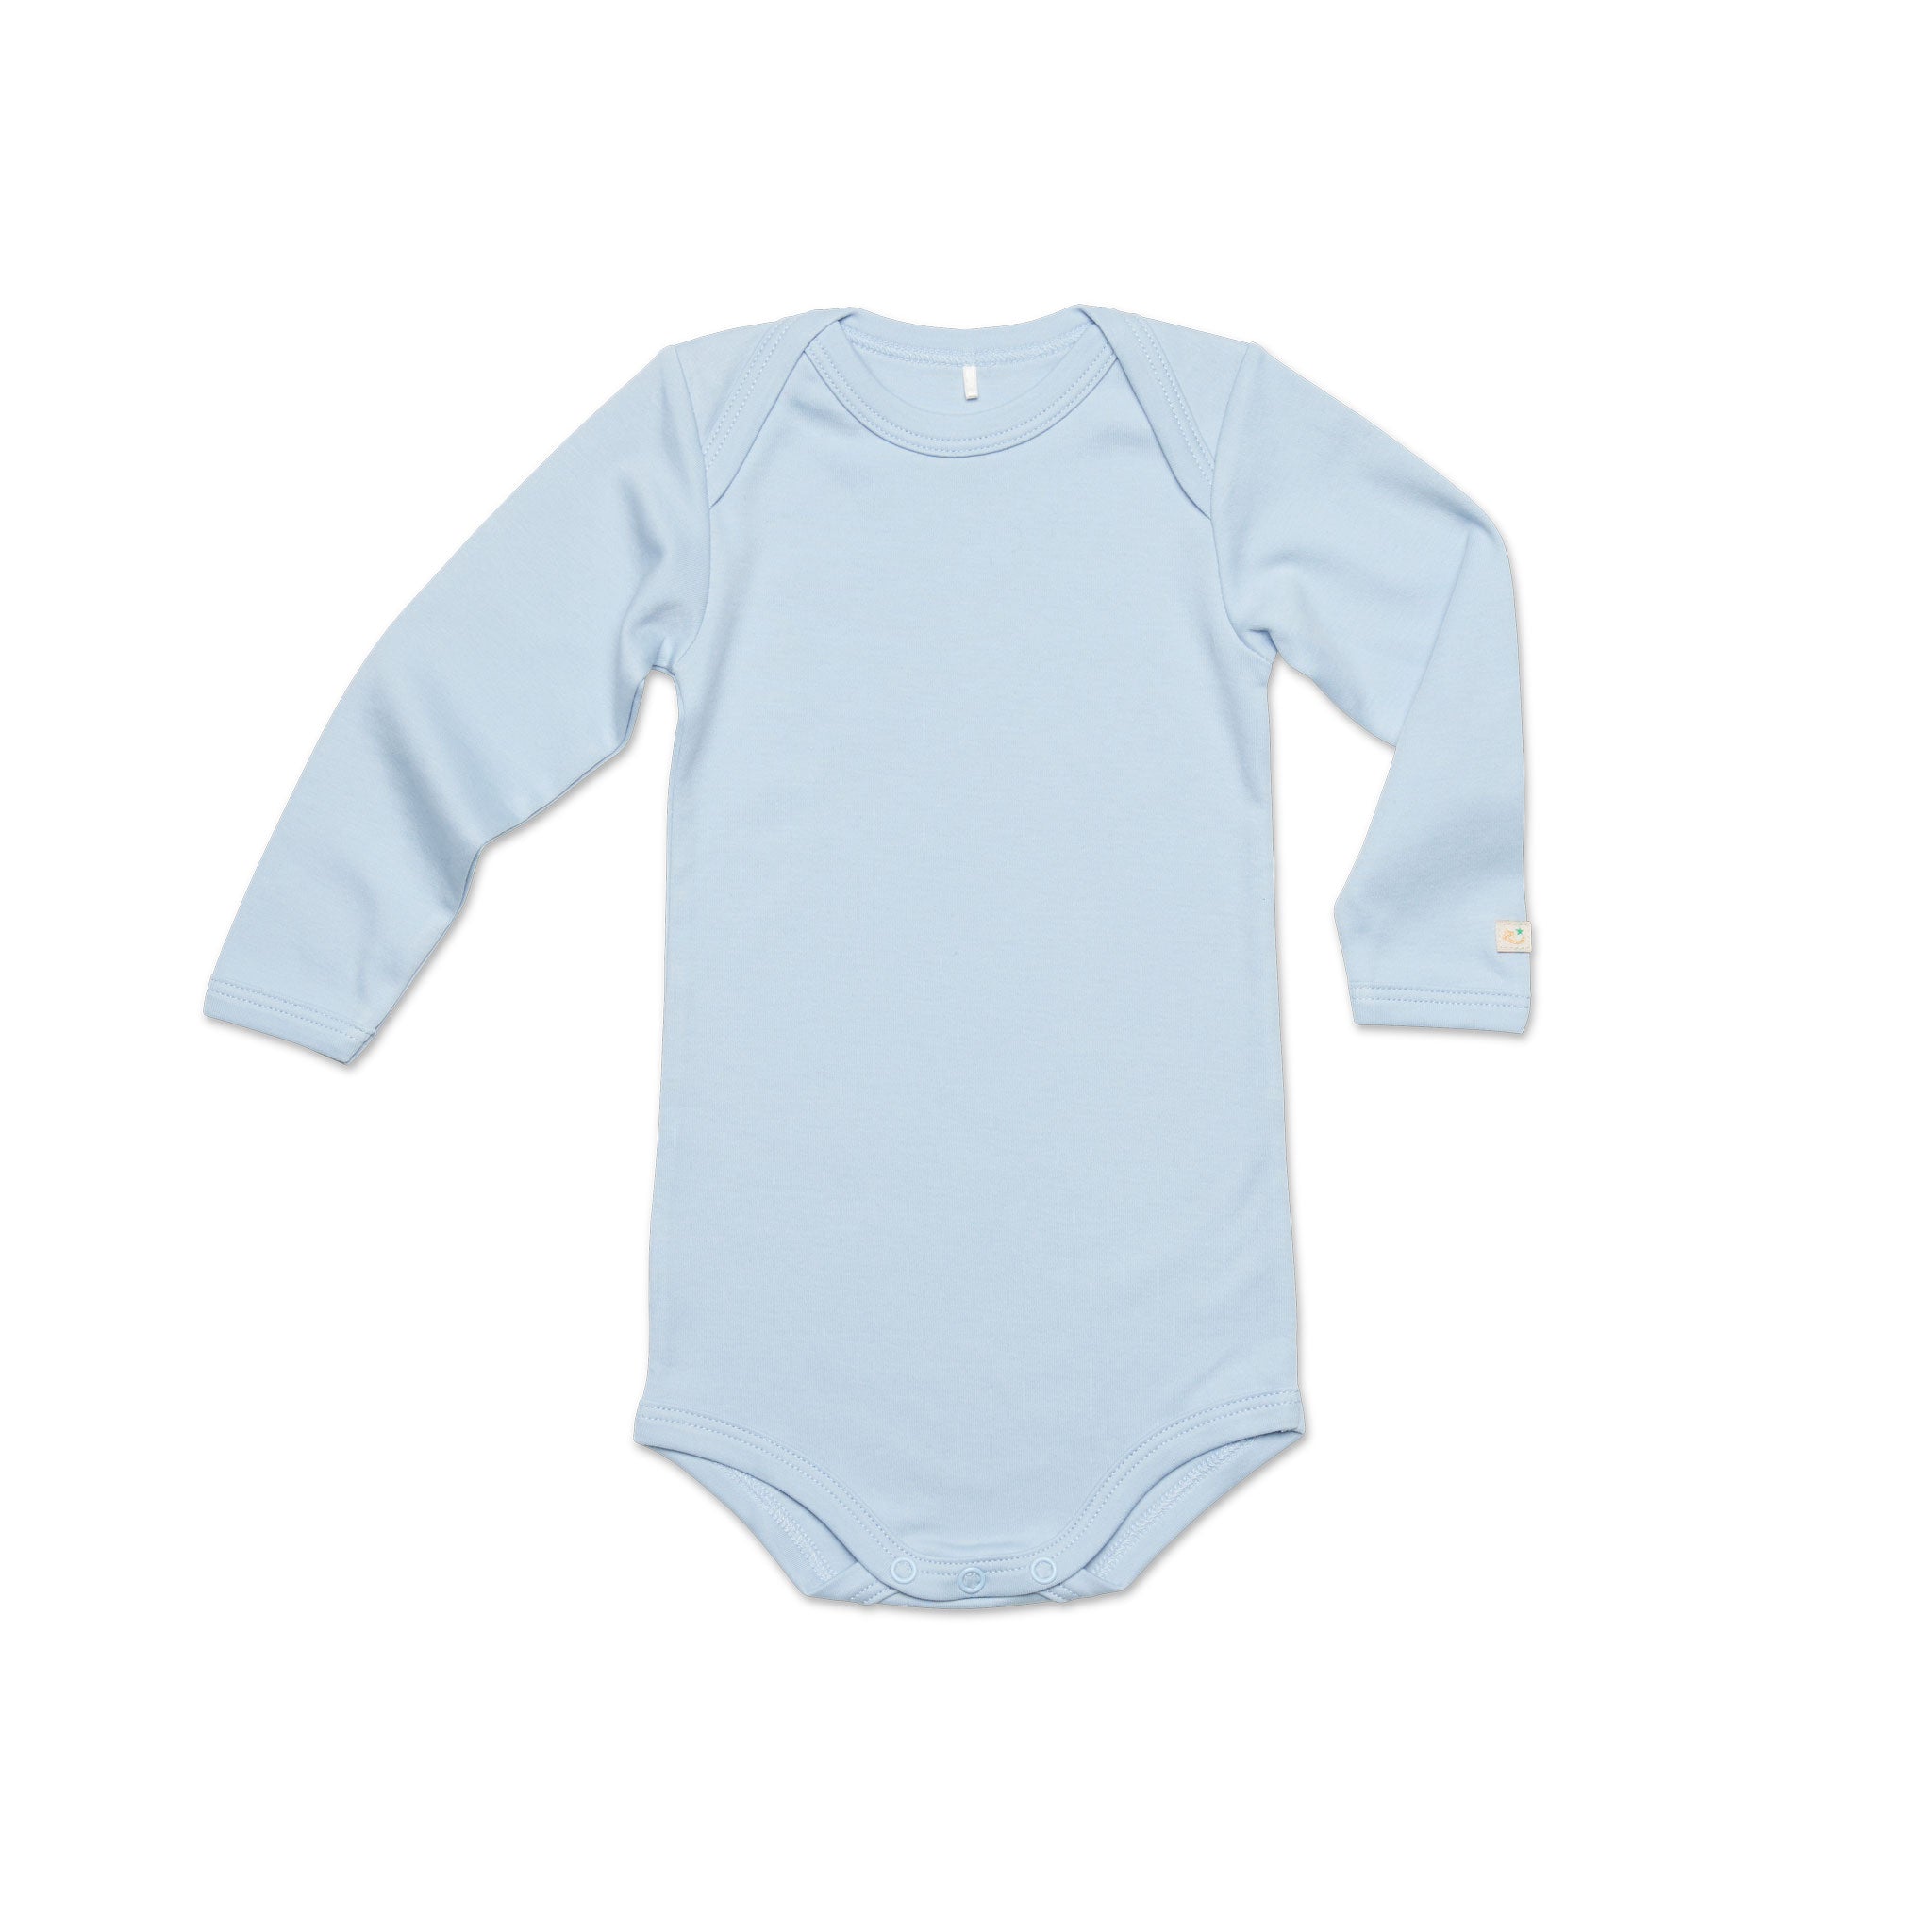 Blå härlig body till bebis tillverkad av finaste ekologiska pimabomull